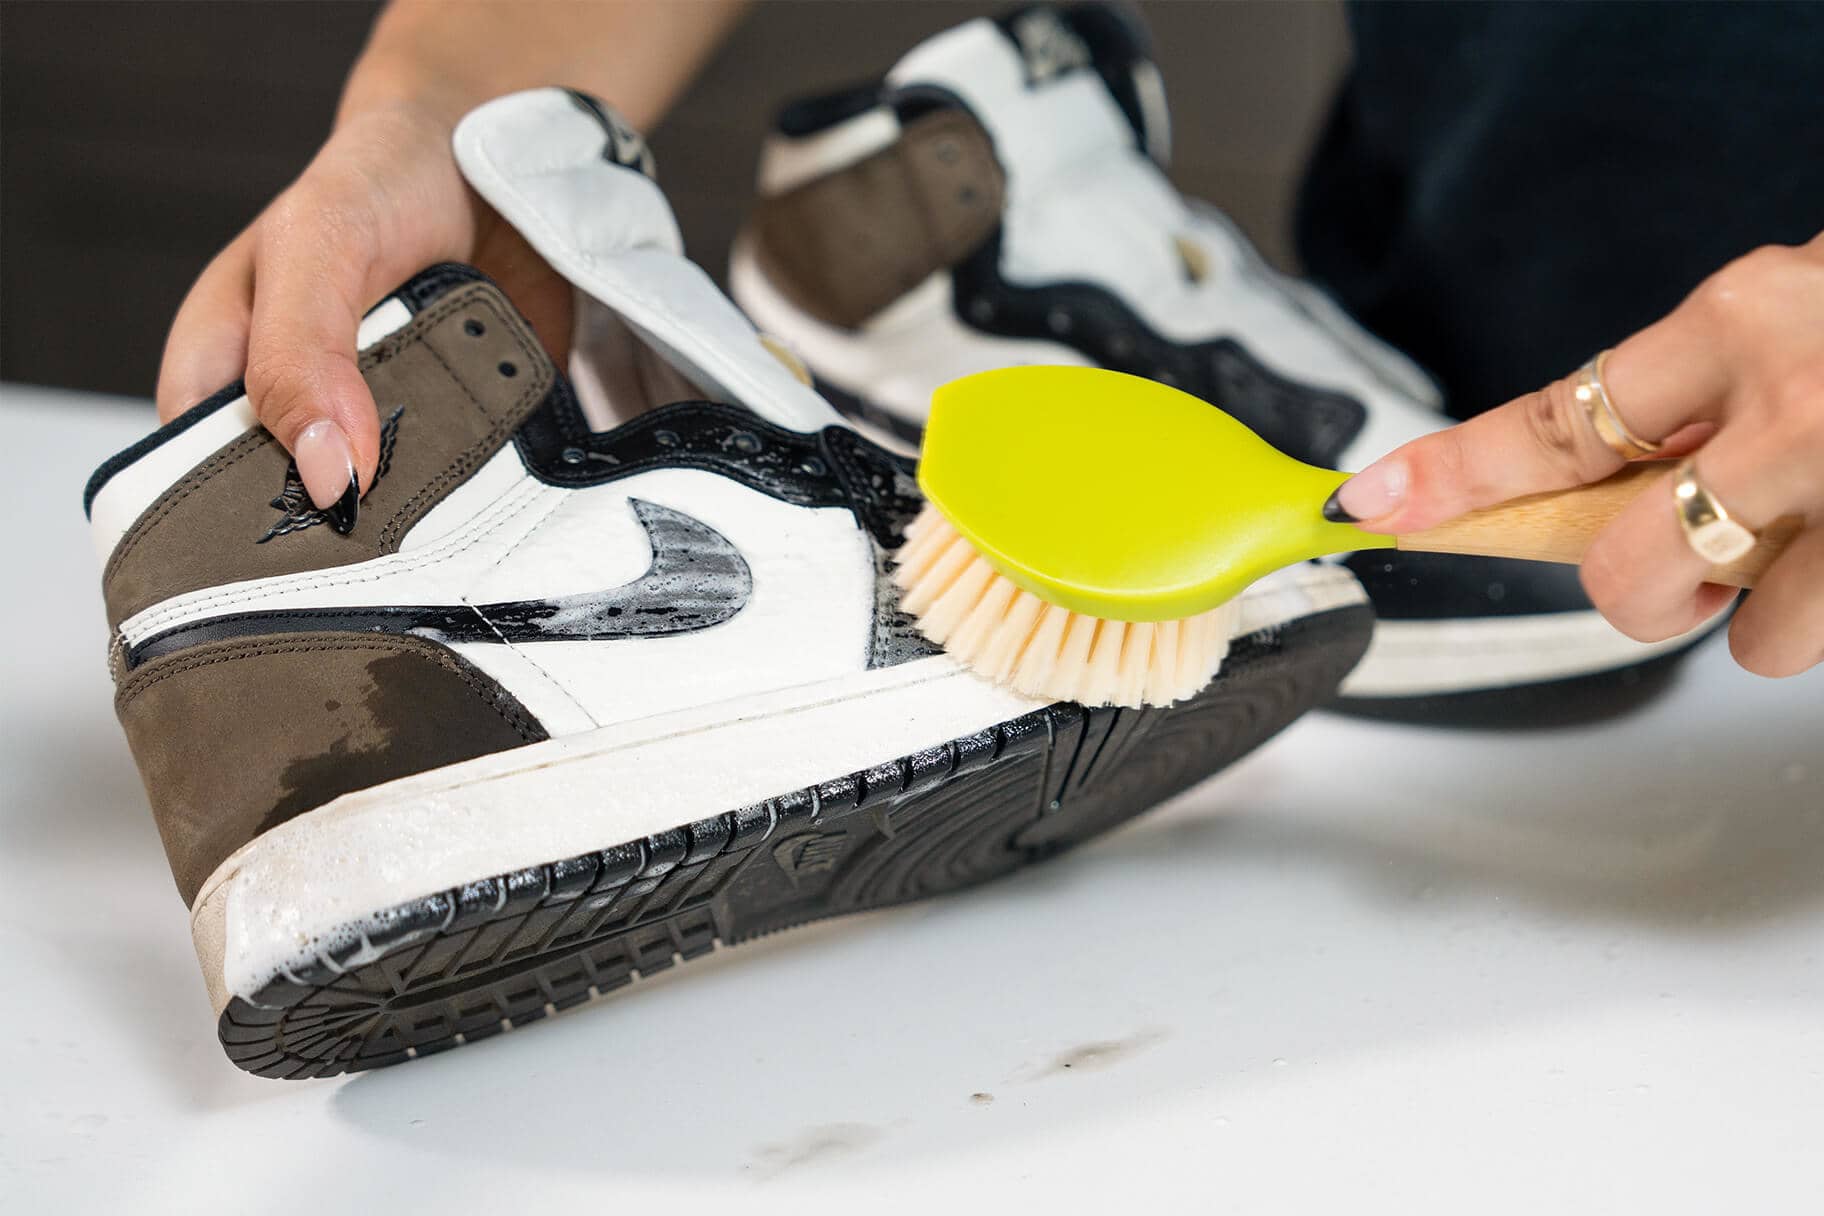 Correa cortar a tajos alcanzar Cómo limpiar tu calzado en 6 pasos fáciles. Nike